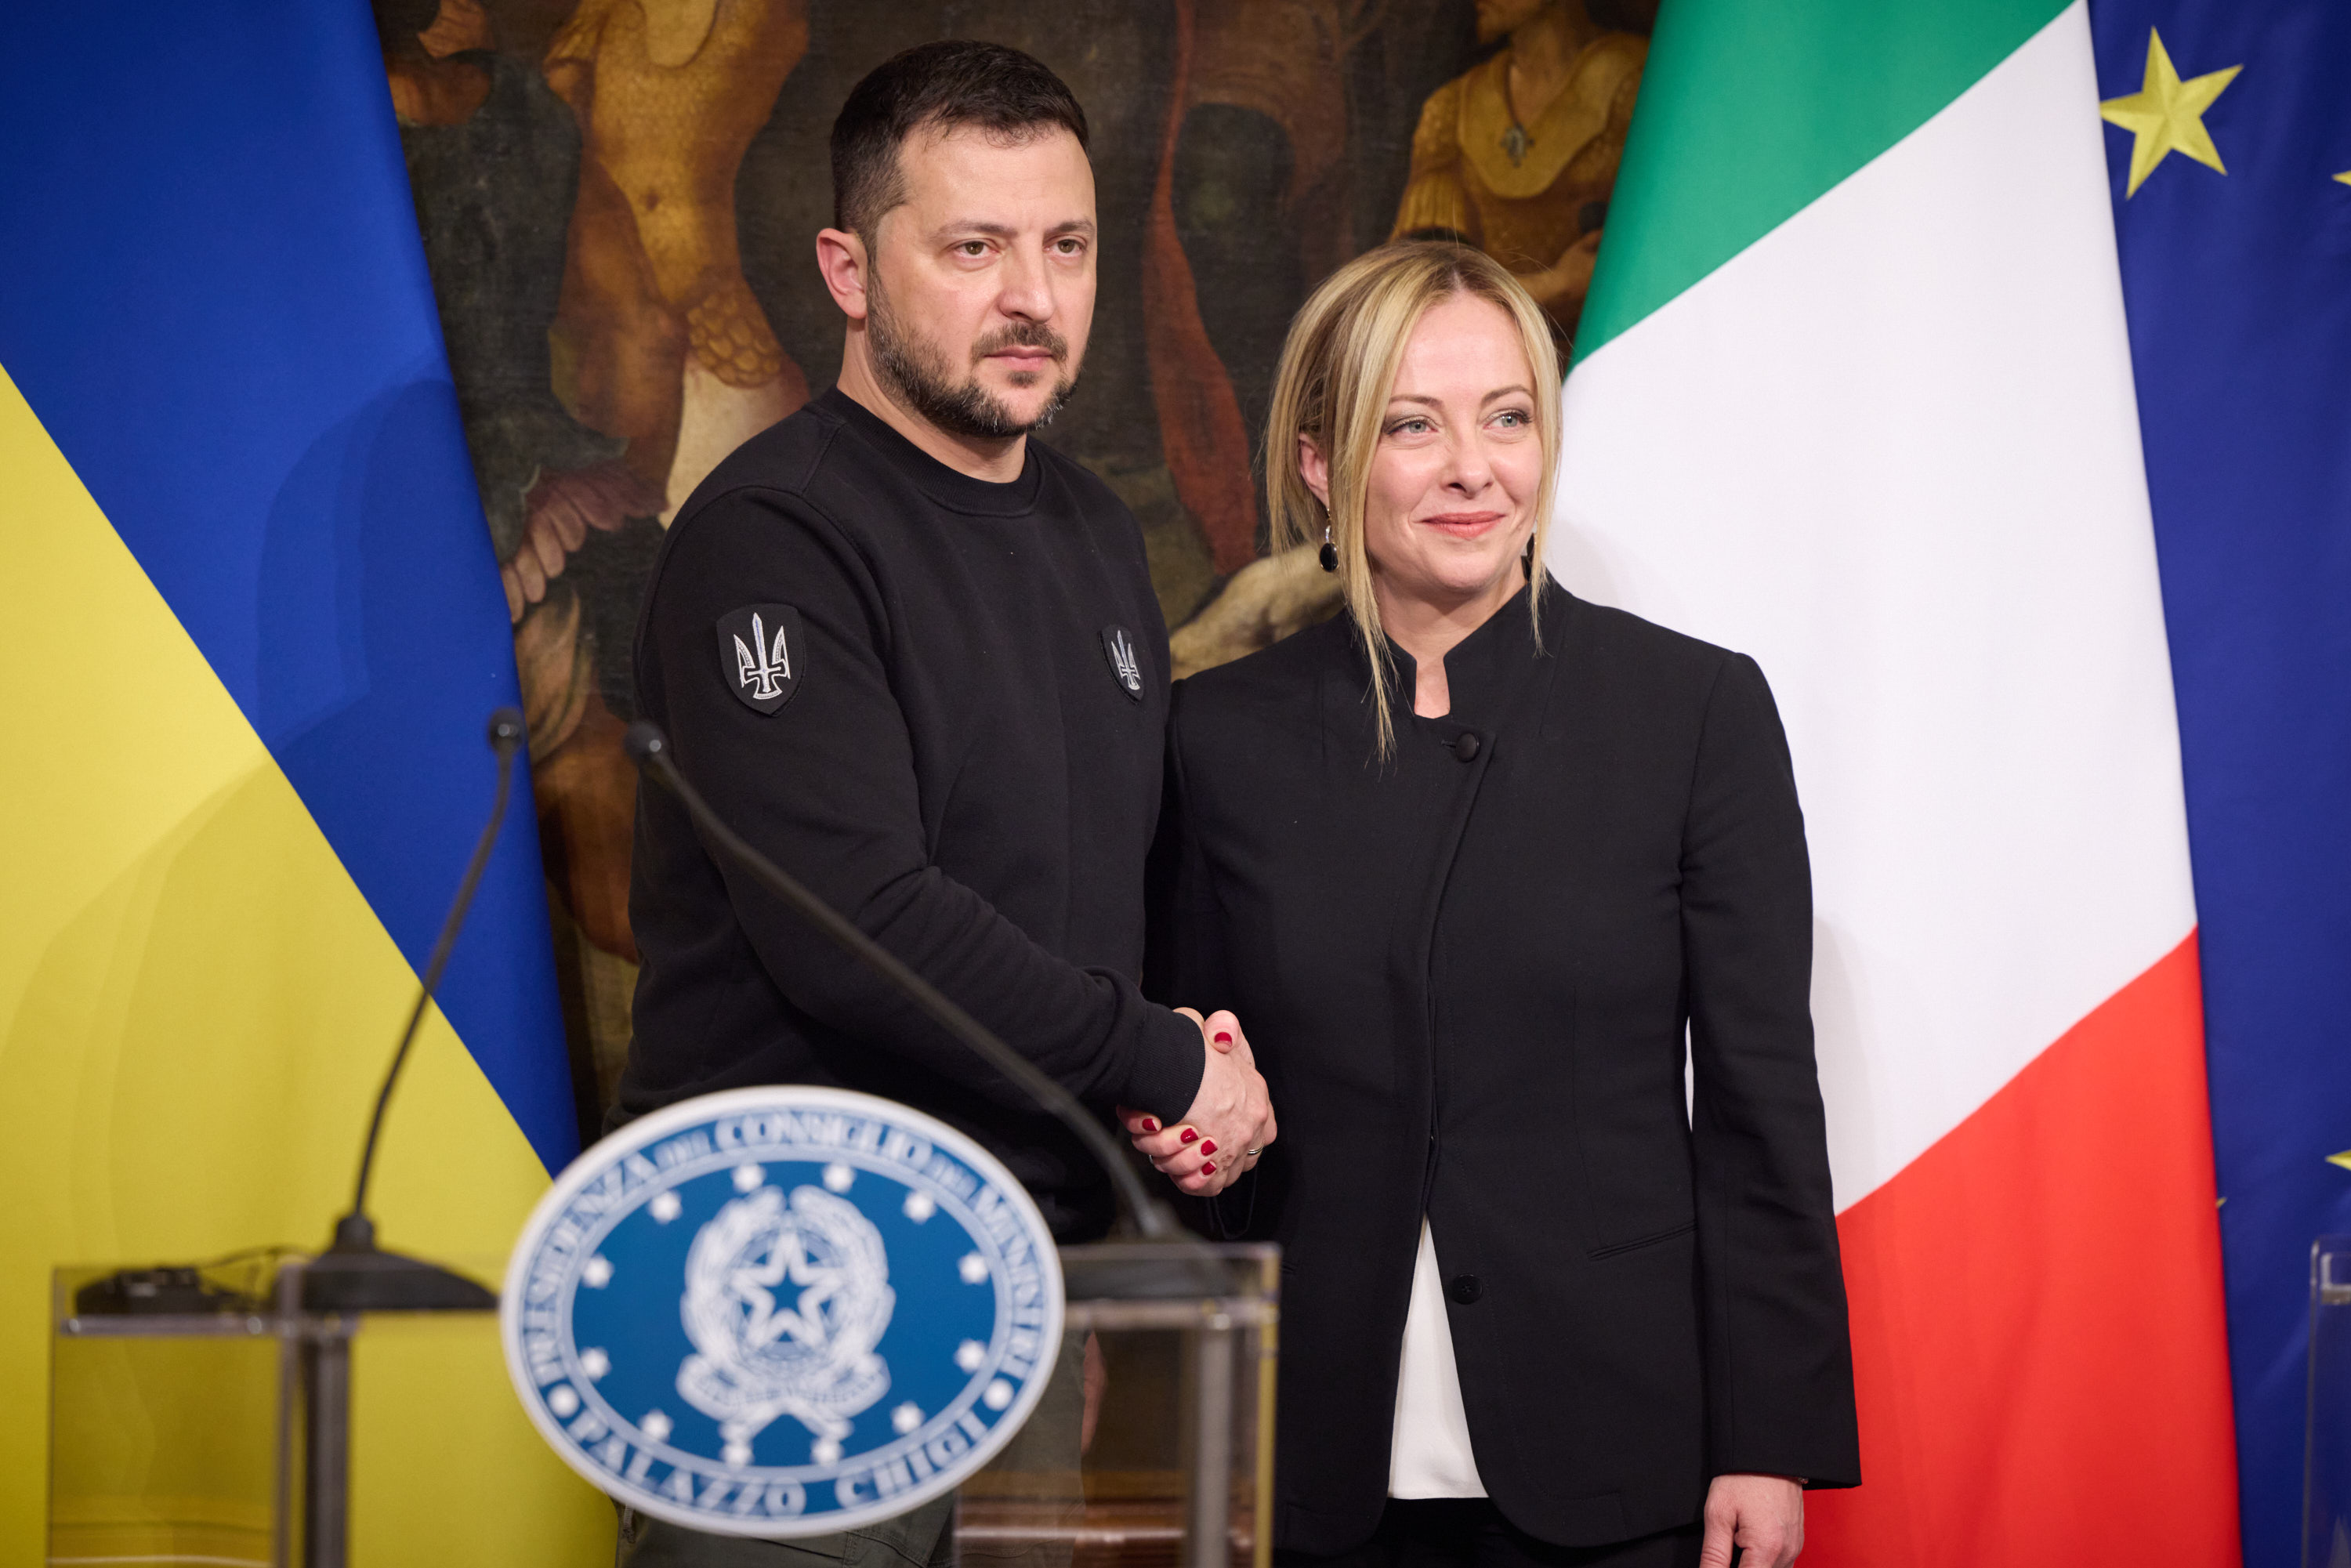 Джорджа Мелоні наголосила, що Італія й далі надаватиме допомогу як у межах двосторонньої, так і багатосторонньої співпраці. Фото з сайту president.gov.ua